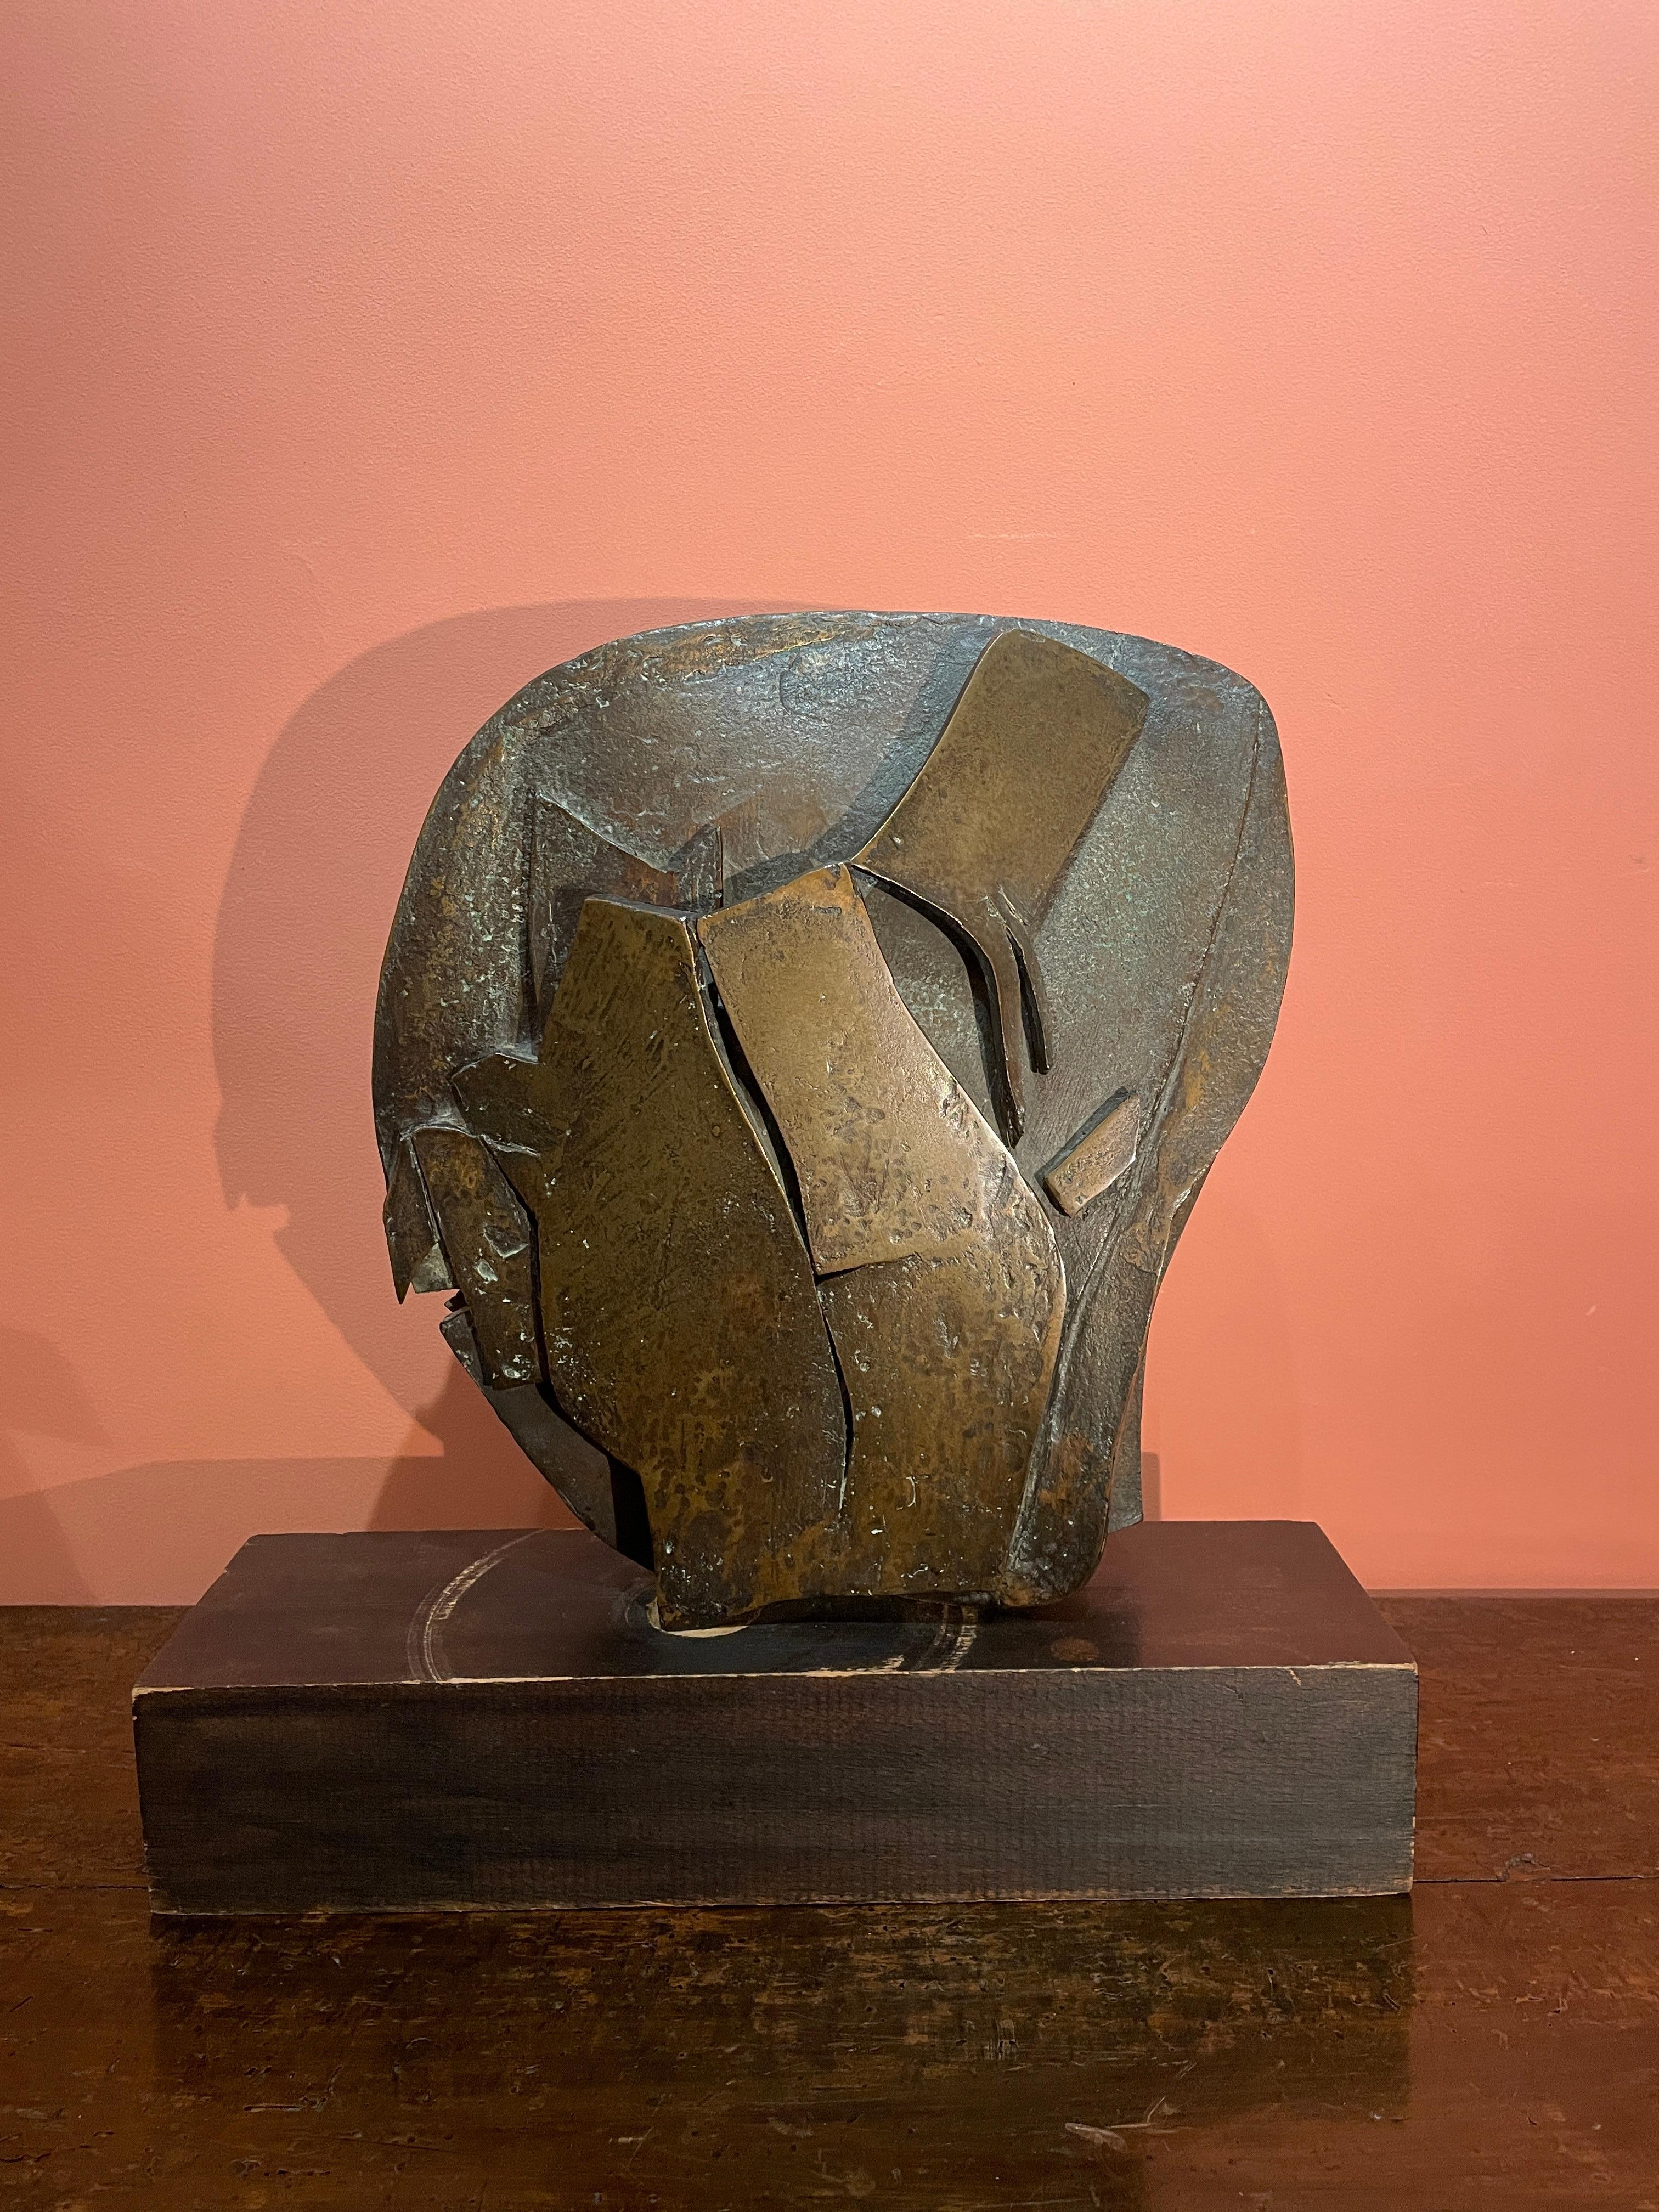 Carlo Ramous
(1926-2003)

Composition abstraite

Sculpture en bronze, avec une patine brune.
Signé 'C Ramous' et numéroté 1/4.

Hauteur : 42 cm
Largeur : 42 cm
Profondeur : 12 cm

Période : De 1958 à 1965


Carlo Ramous est un